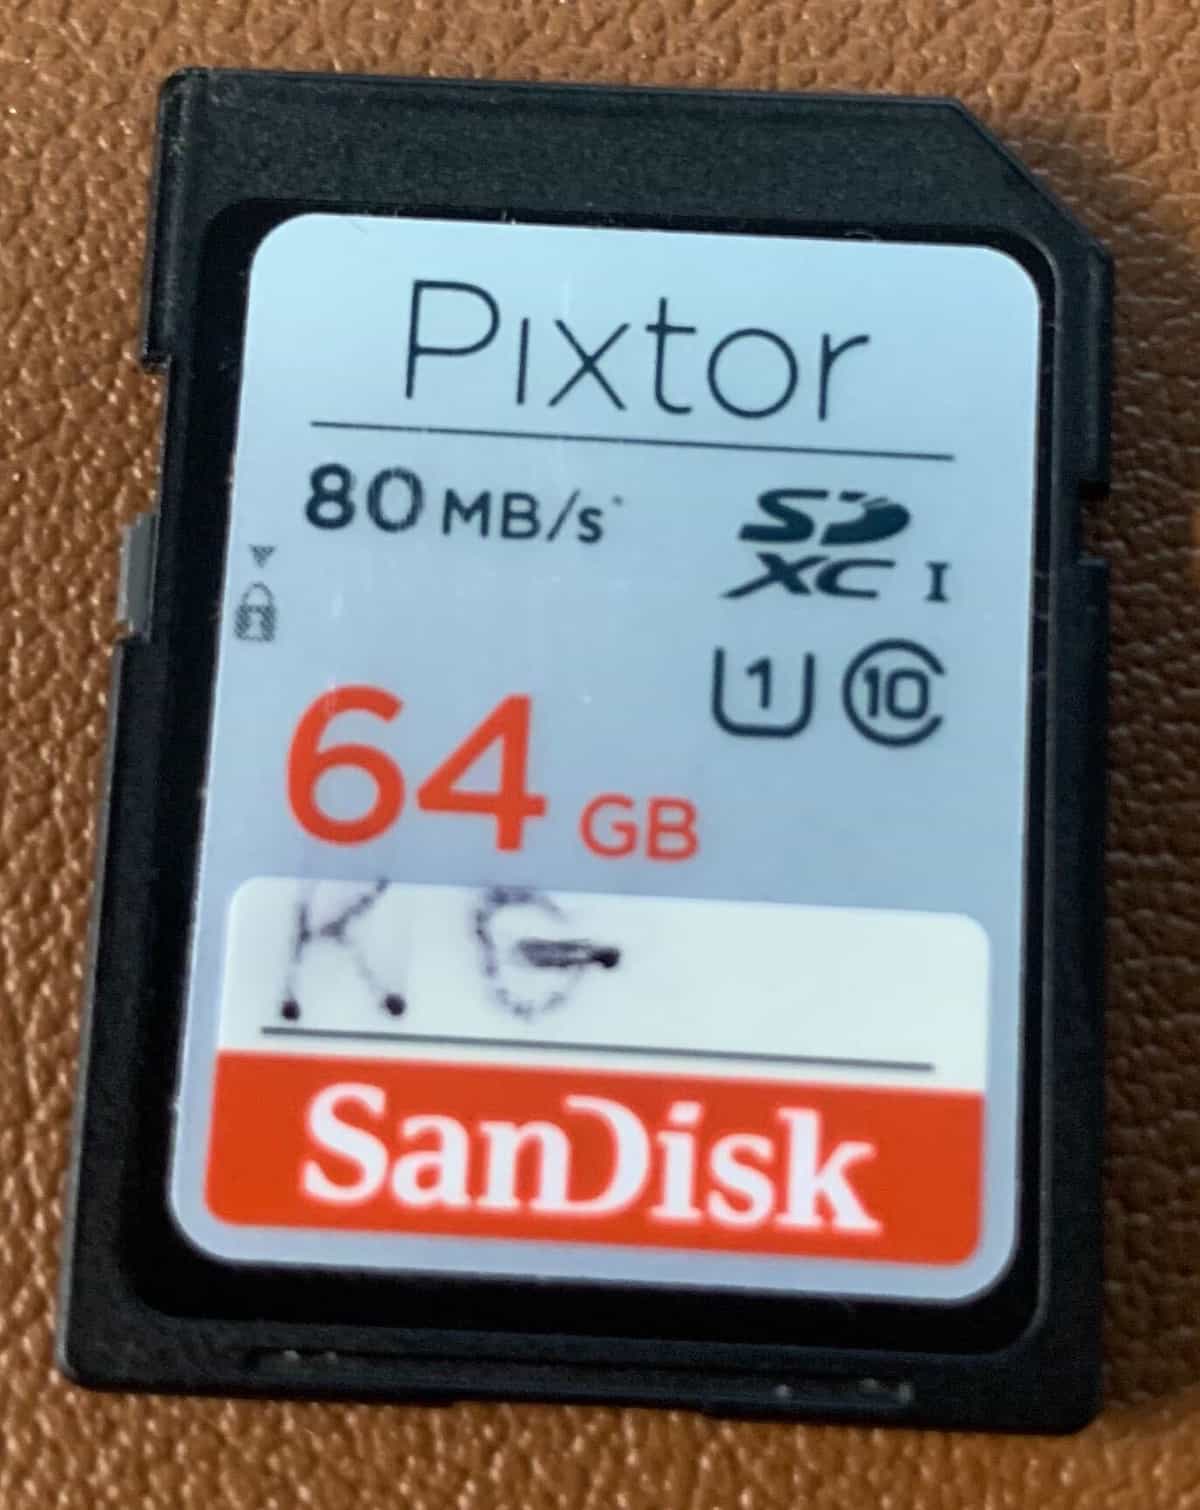 Accidentally Erased Sandisk SD Card